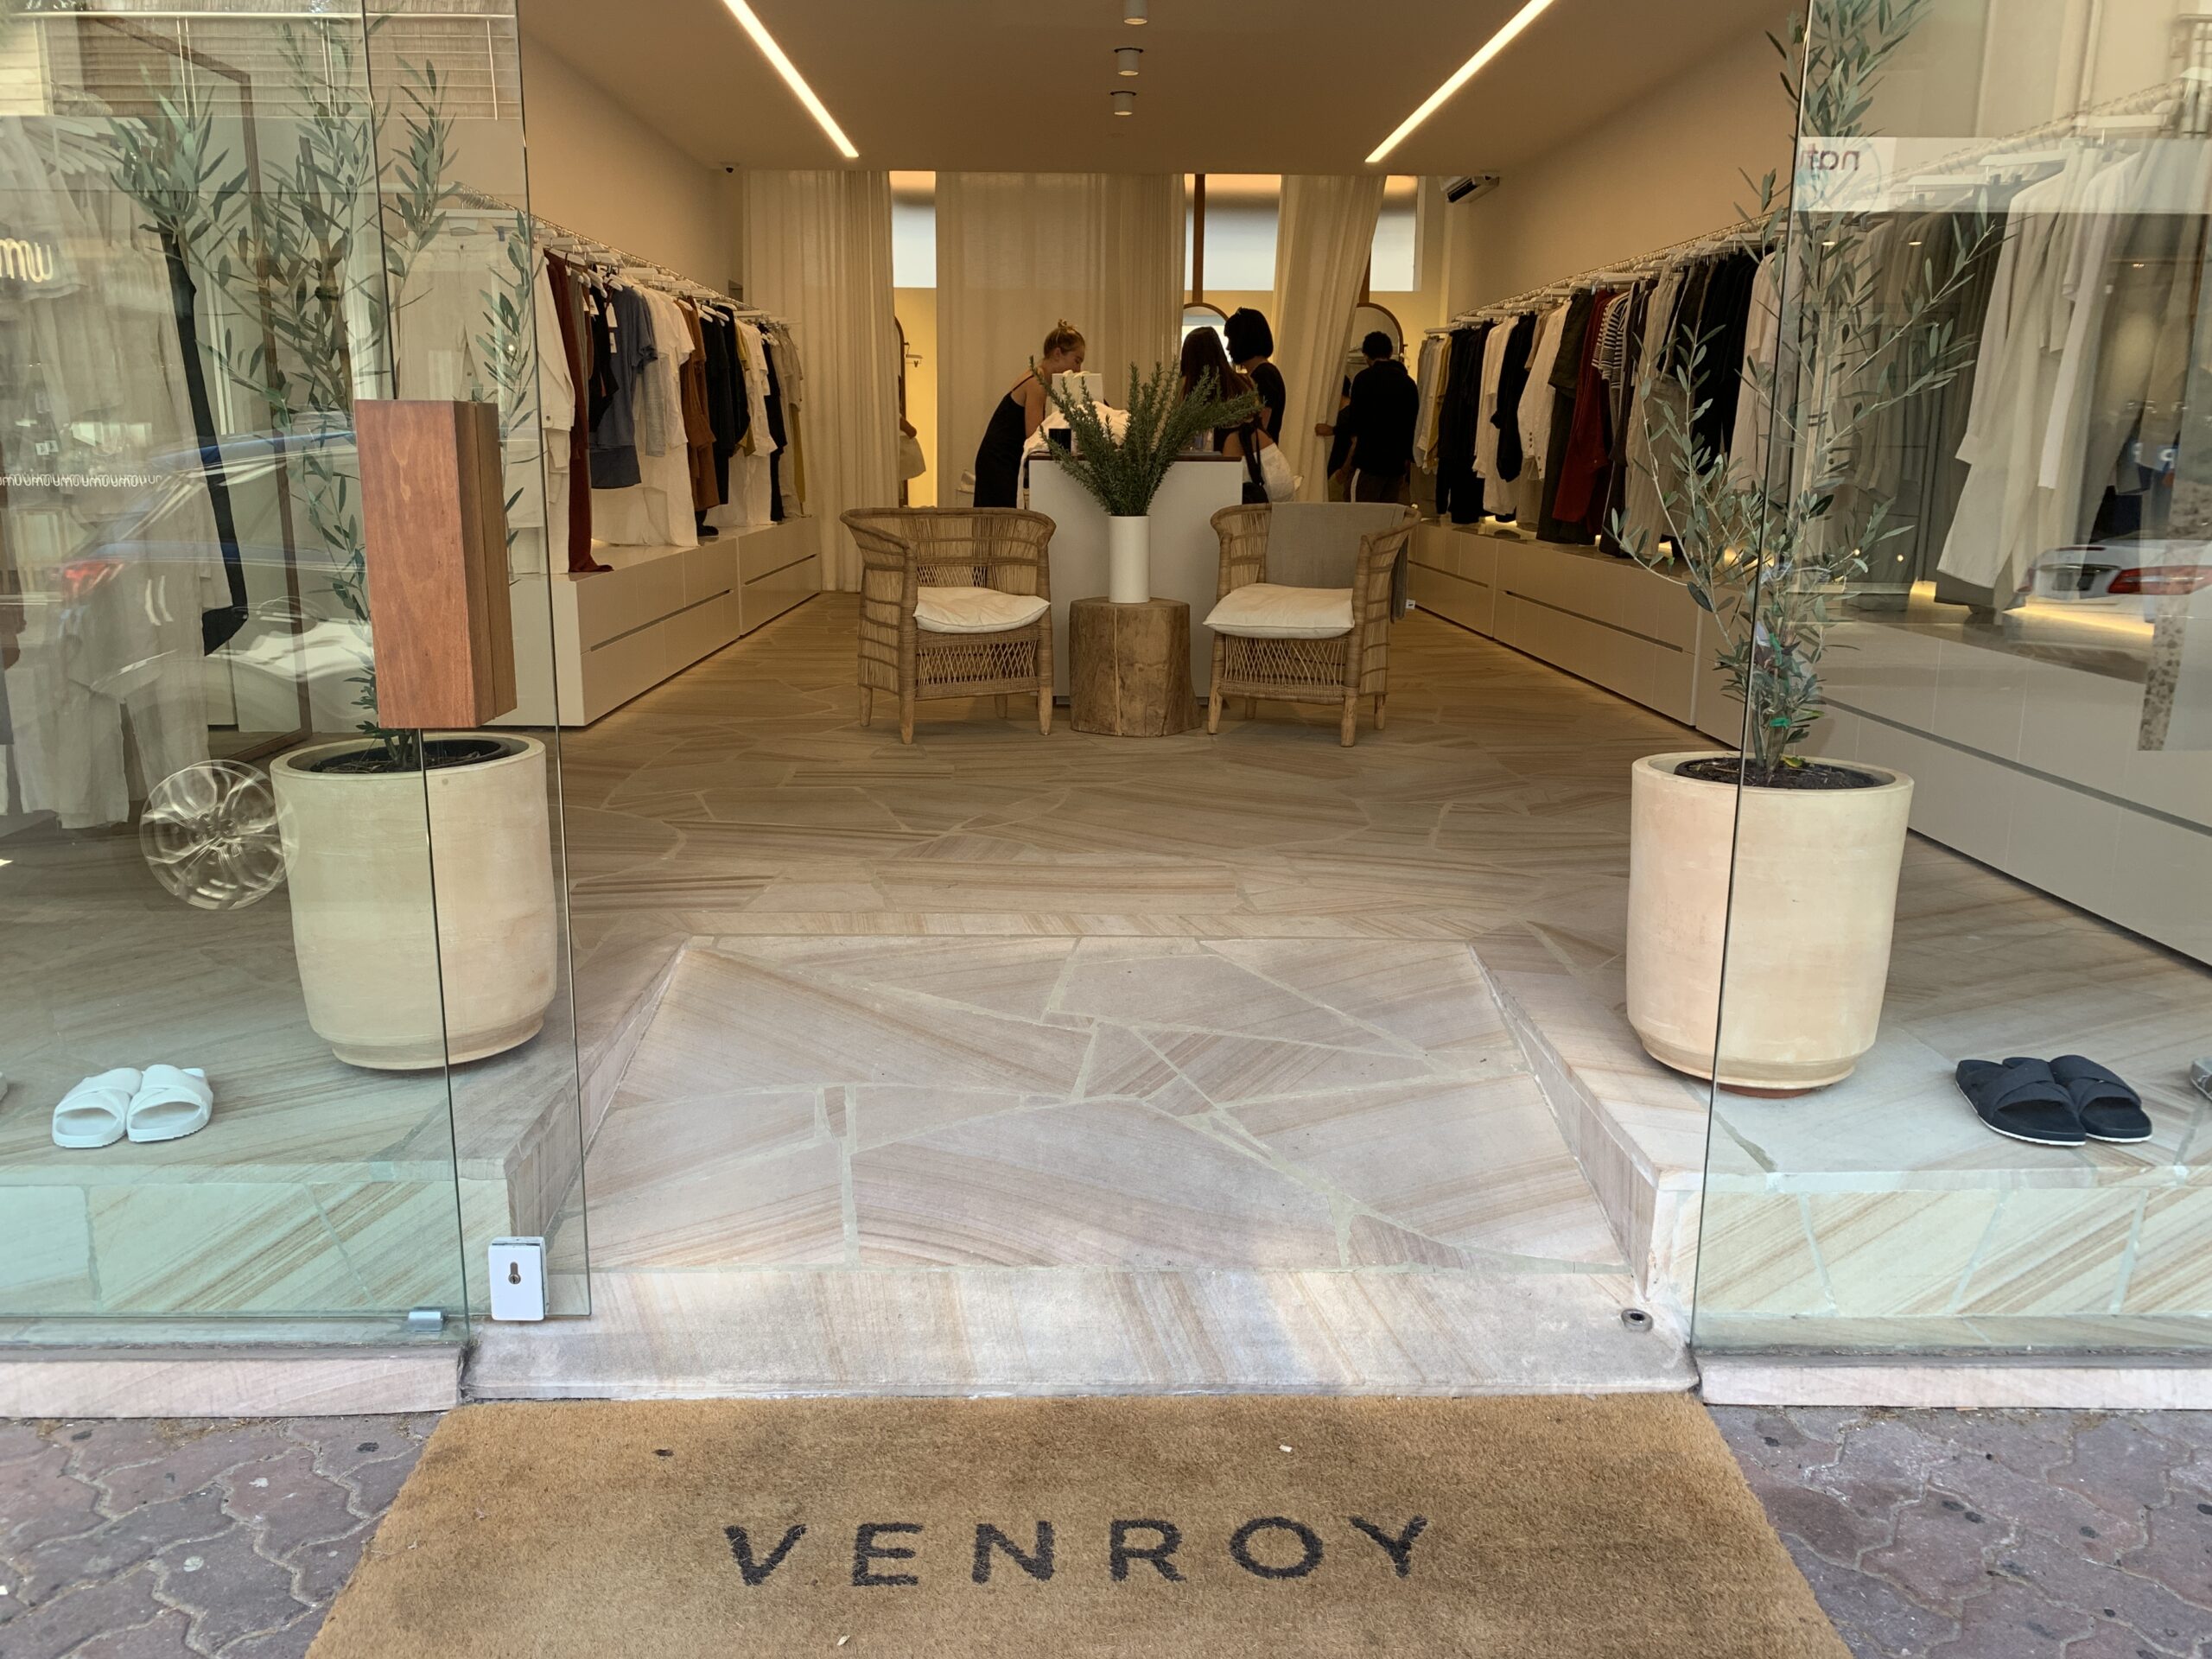 ファッションブランド【VENROY】Bondi Beach店舗の外観を撮影した写真